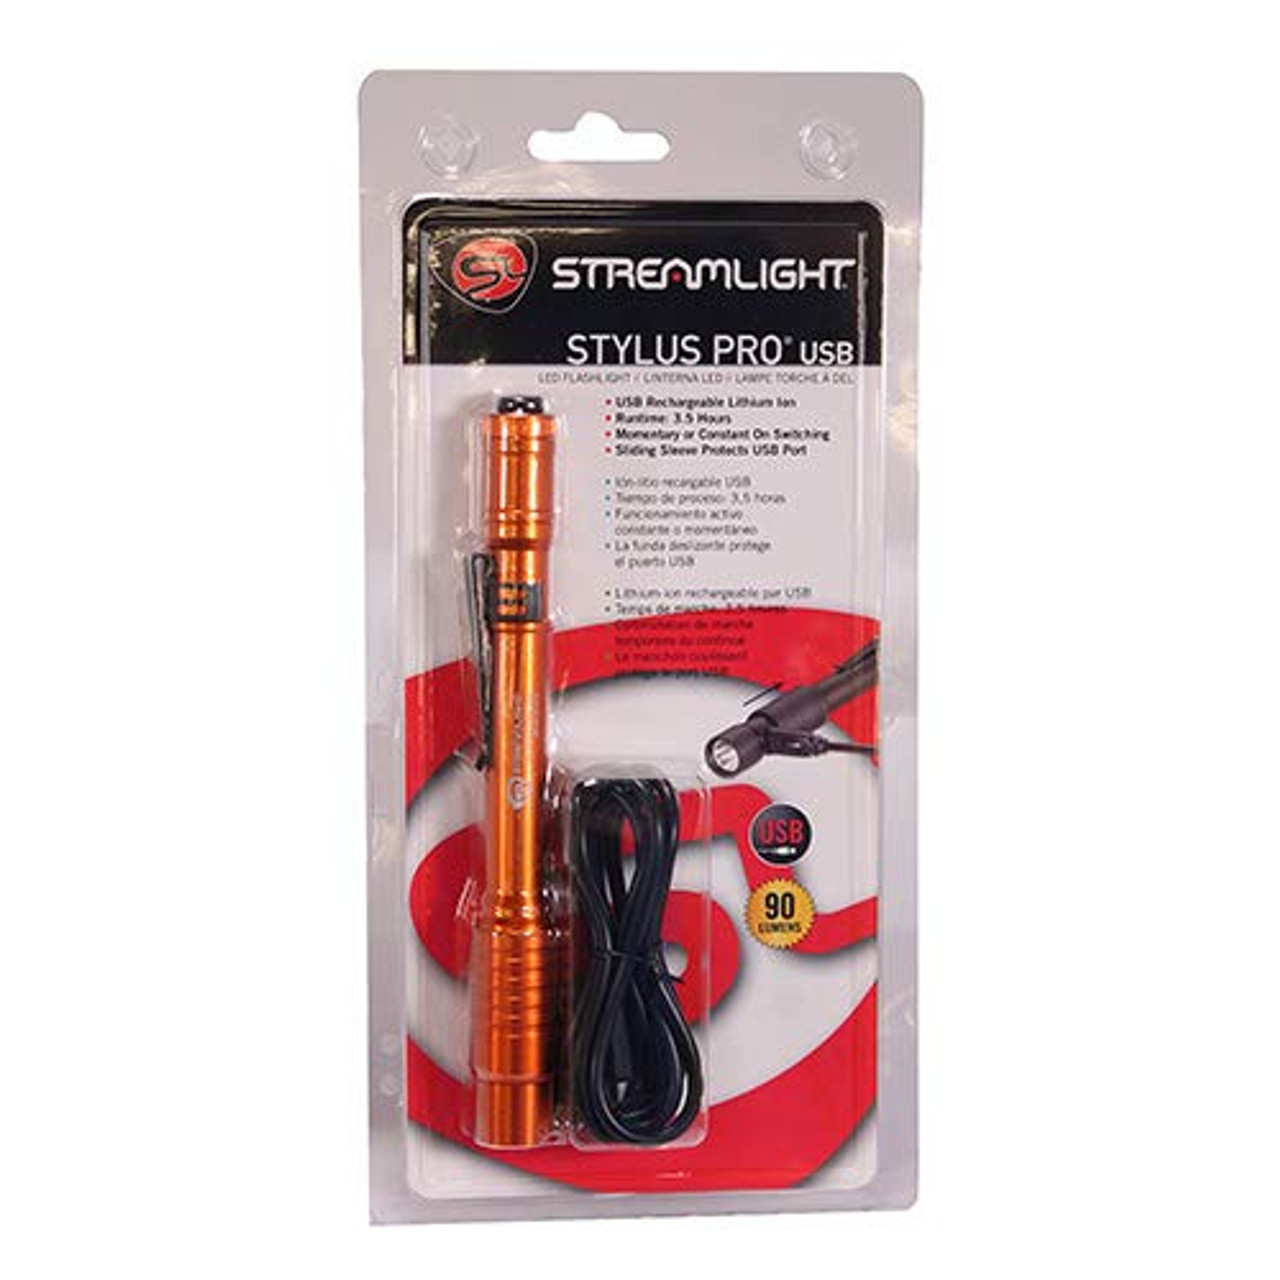 streamlight pen light